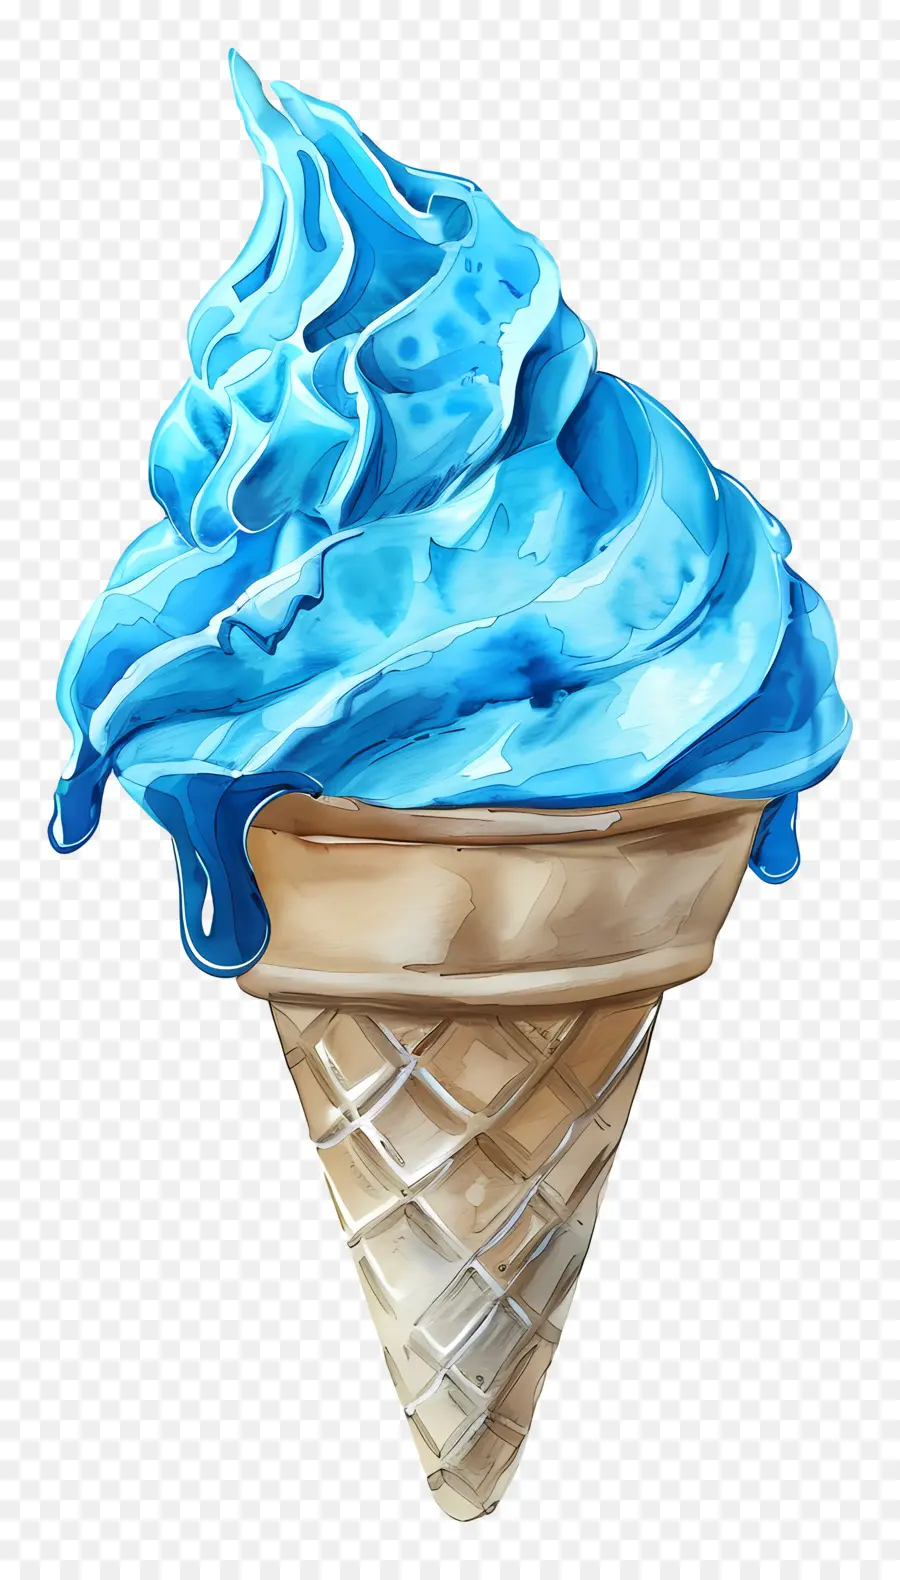 Kem xanh kem kem kem hình nón băng ốc băng giá - Kem hình nón màu xanh với kết cấu nước